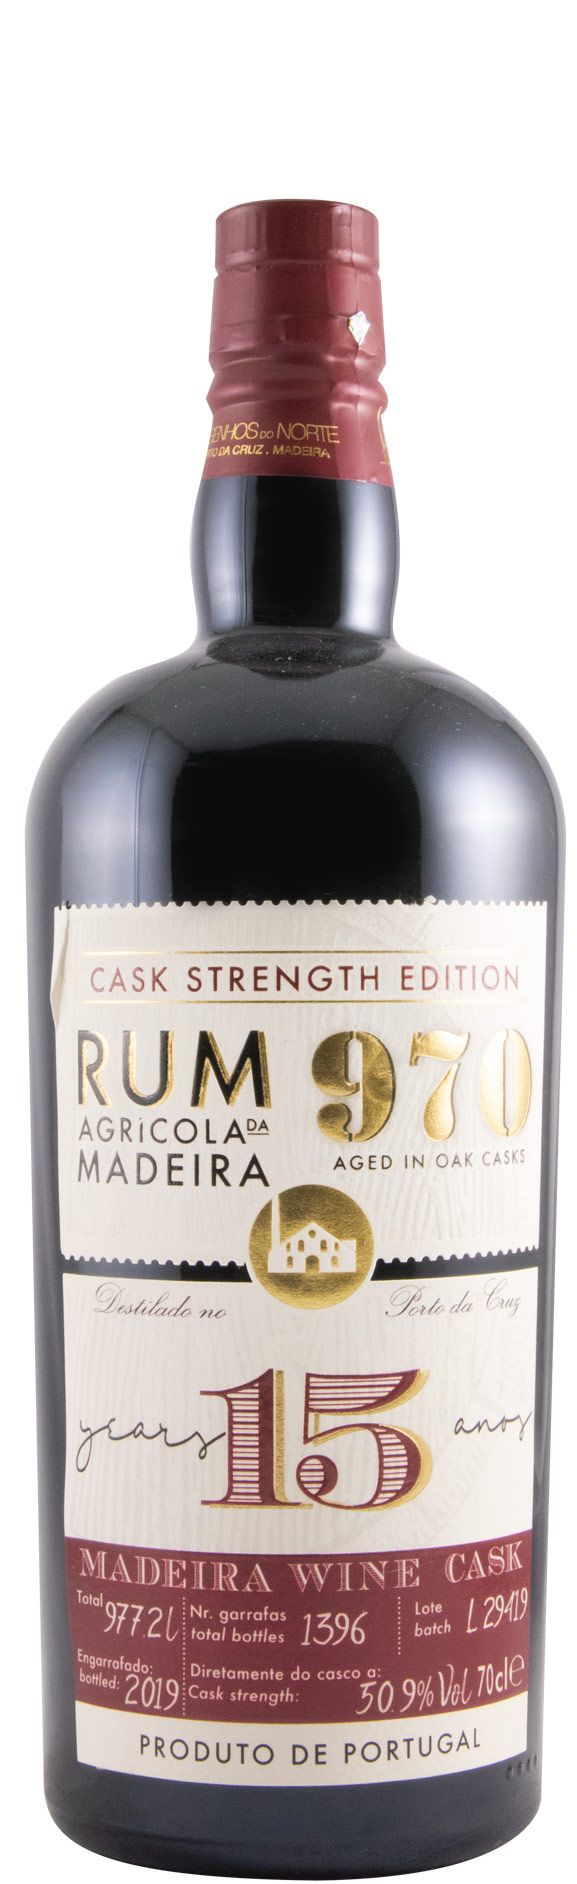 Rum Agrícola da Madeira 970 Cask Strenght 15 anos 50.9%